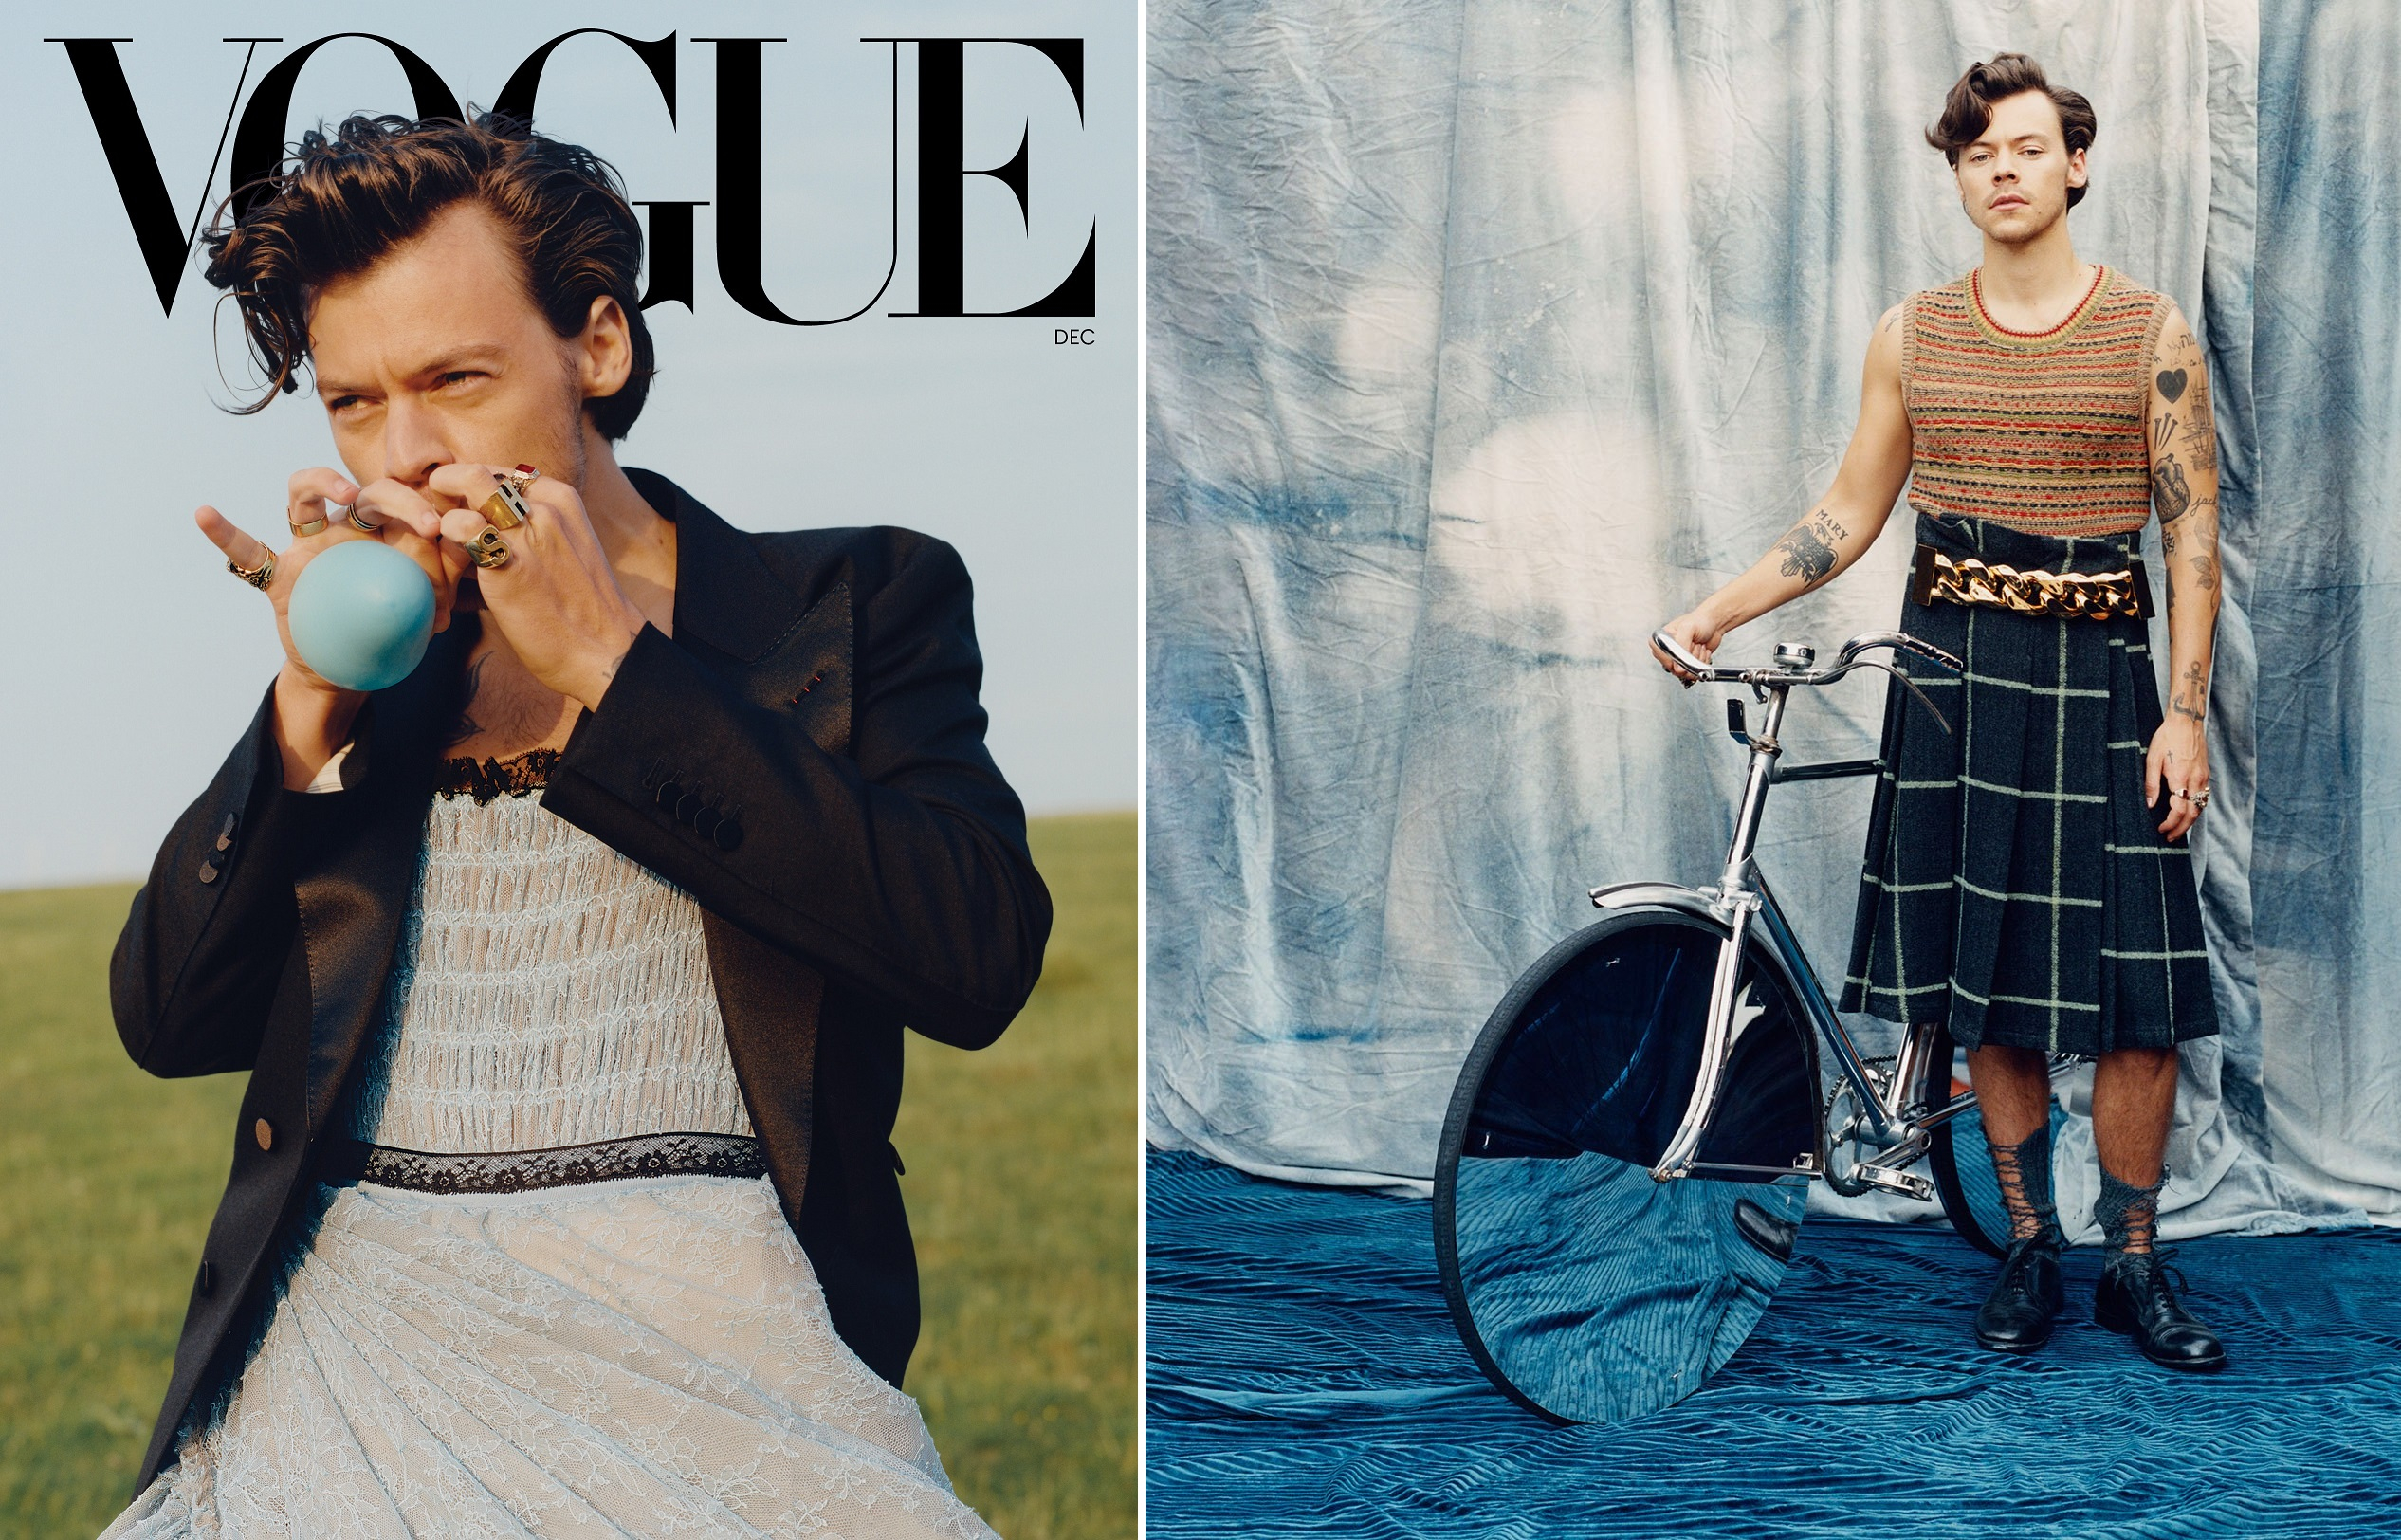 Harry Styles suscita polémica en la primera portada de Vogue protagonizada por un hombre